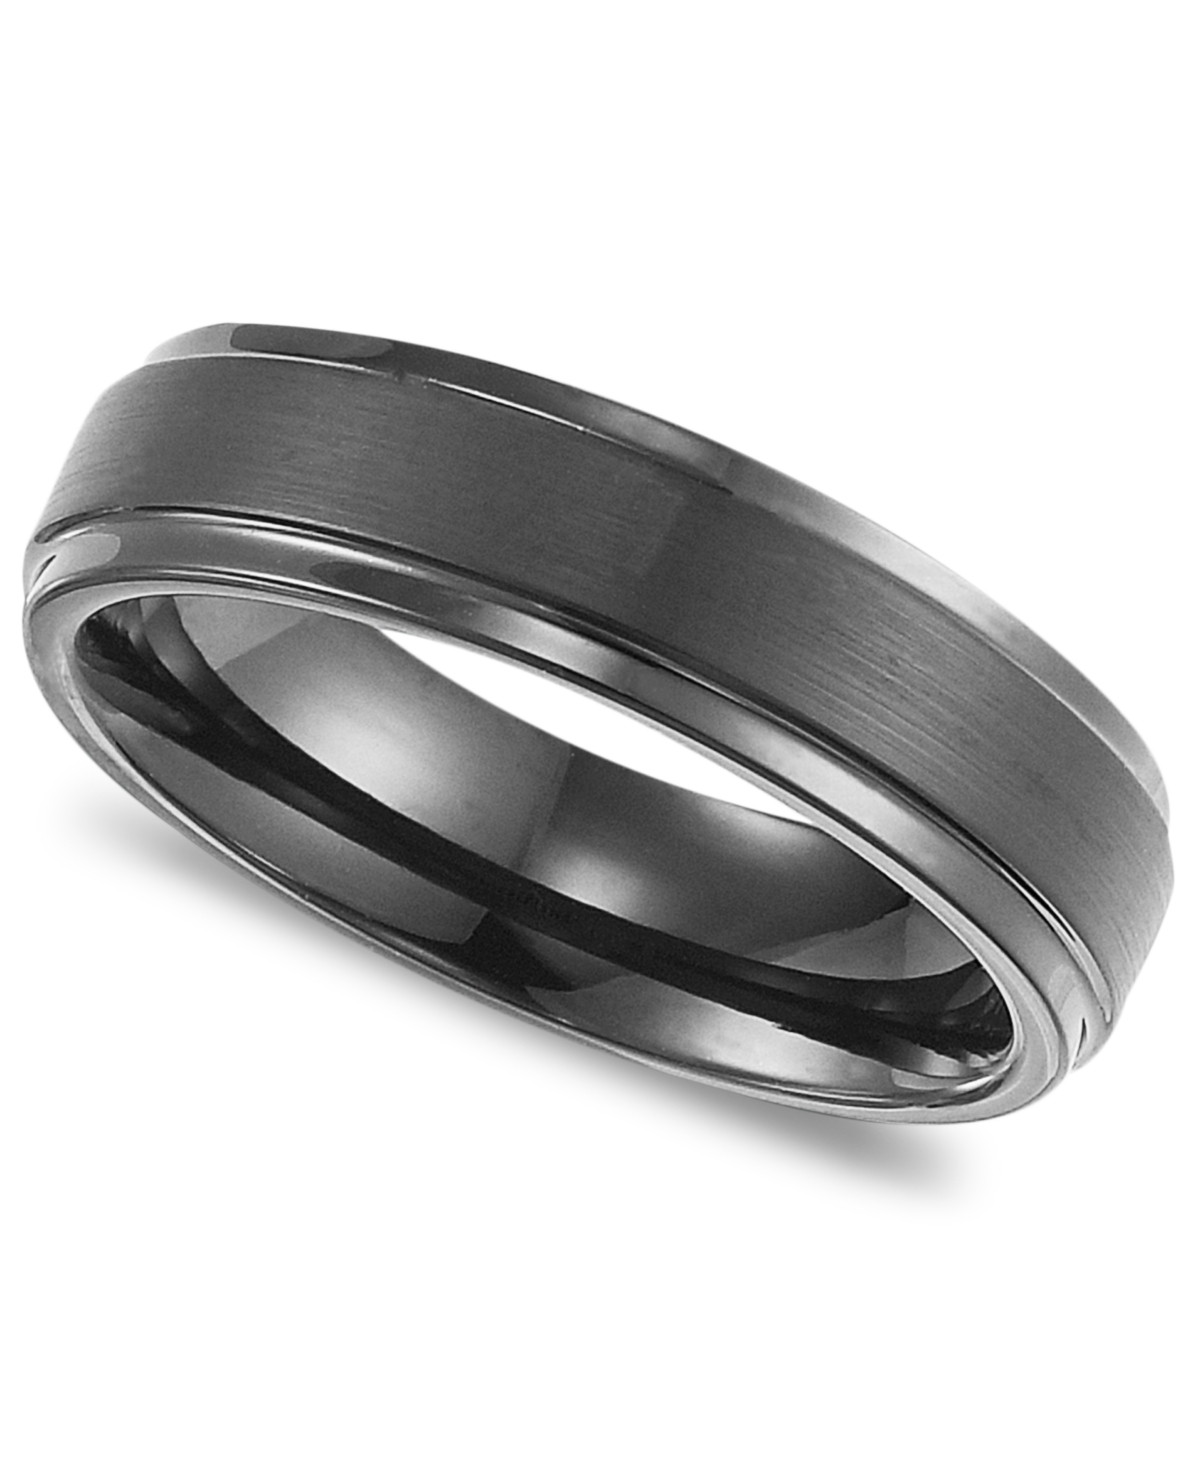 Men's Black Tungsten Carbide Ring, Comfort Fit Wedding Band (6mm) - Tungsten